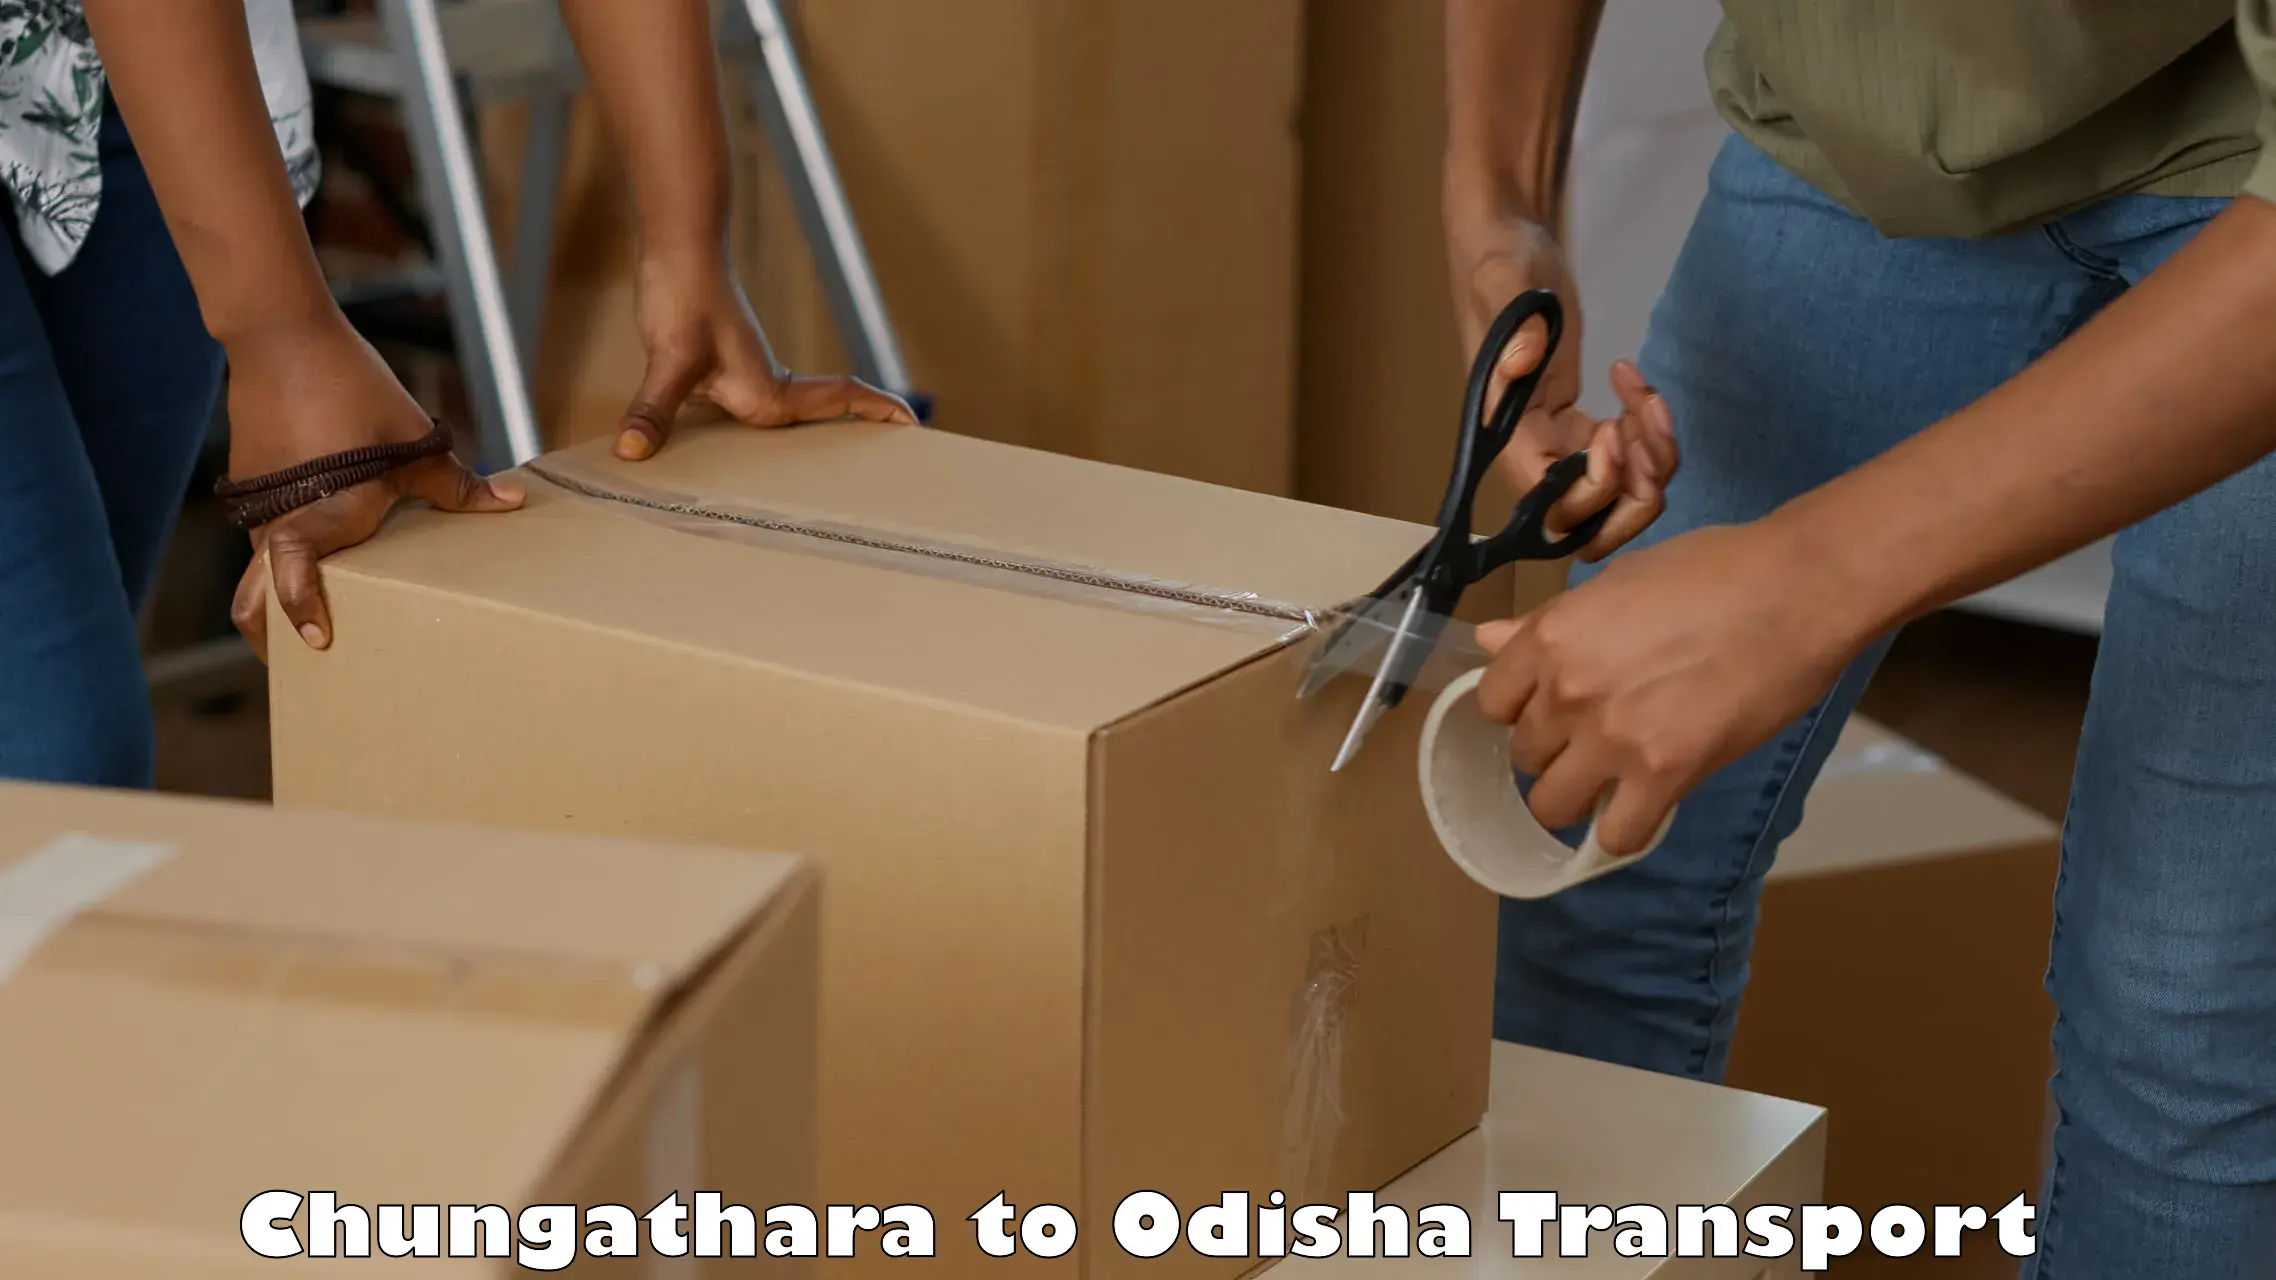 Shipping services Chungathara to Kandhamal